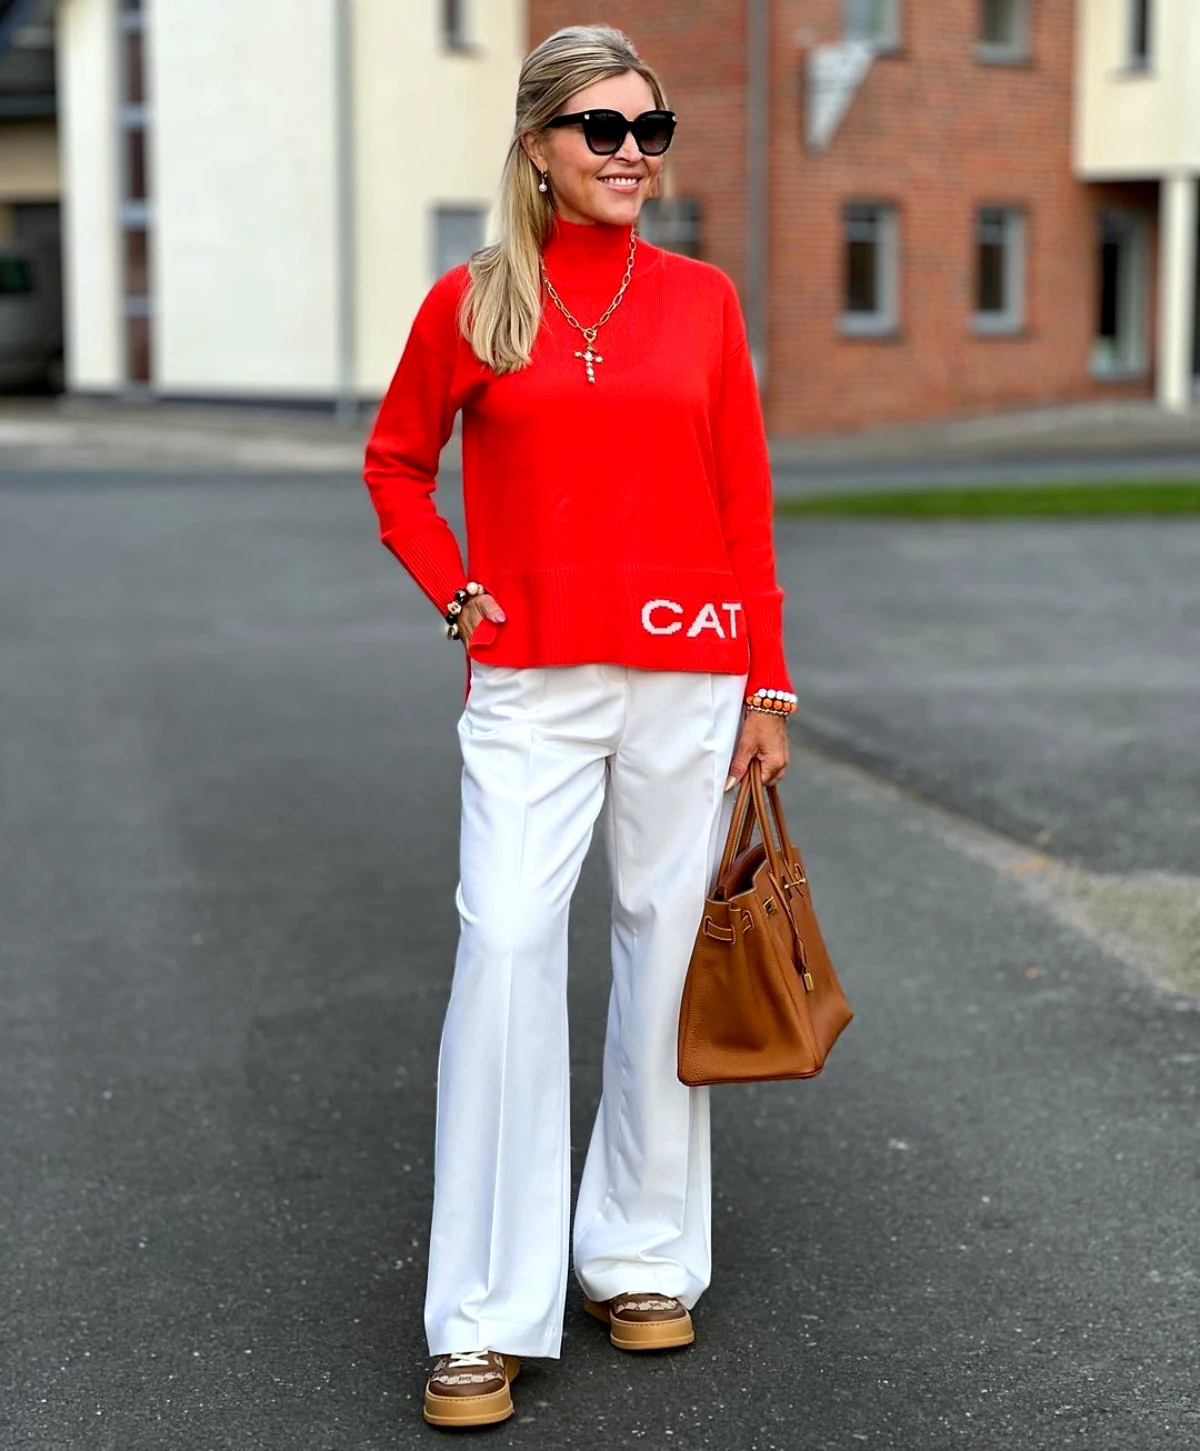 comment porter un pull rouge apres 50 ans mode femme tendance